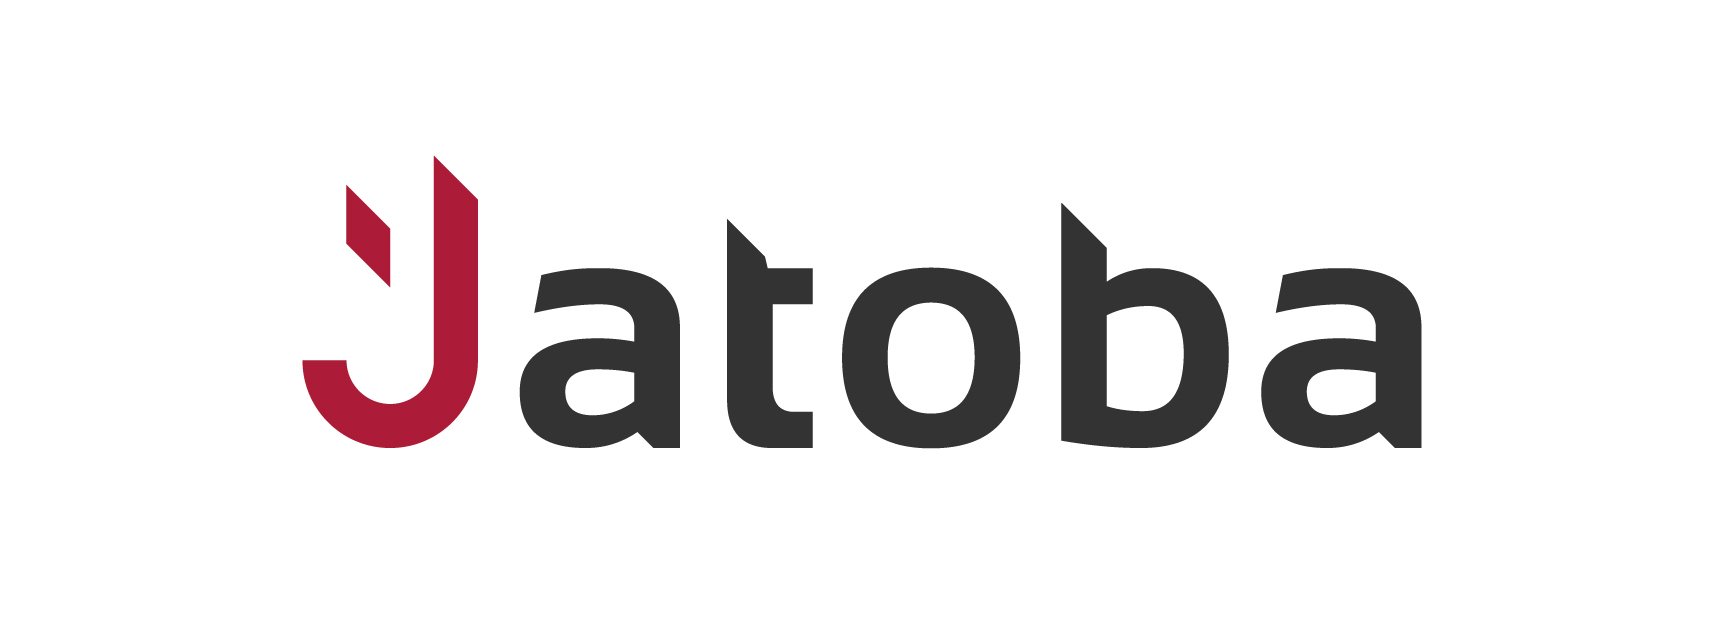 Отечественная СУБД Jatoba теперь совместима с платформой «1С:Предприятие»